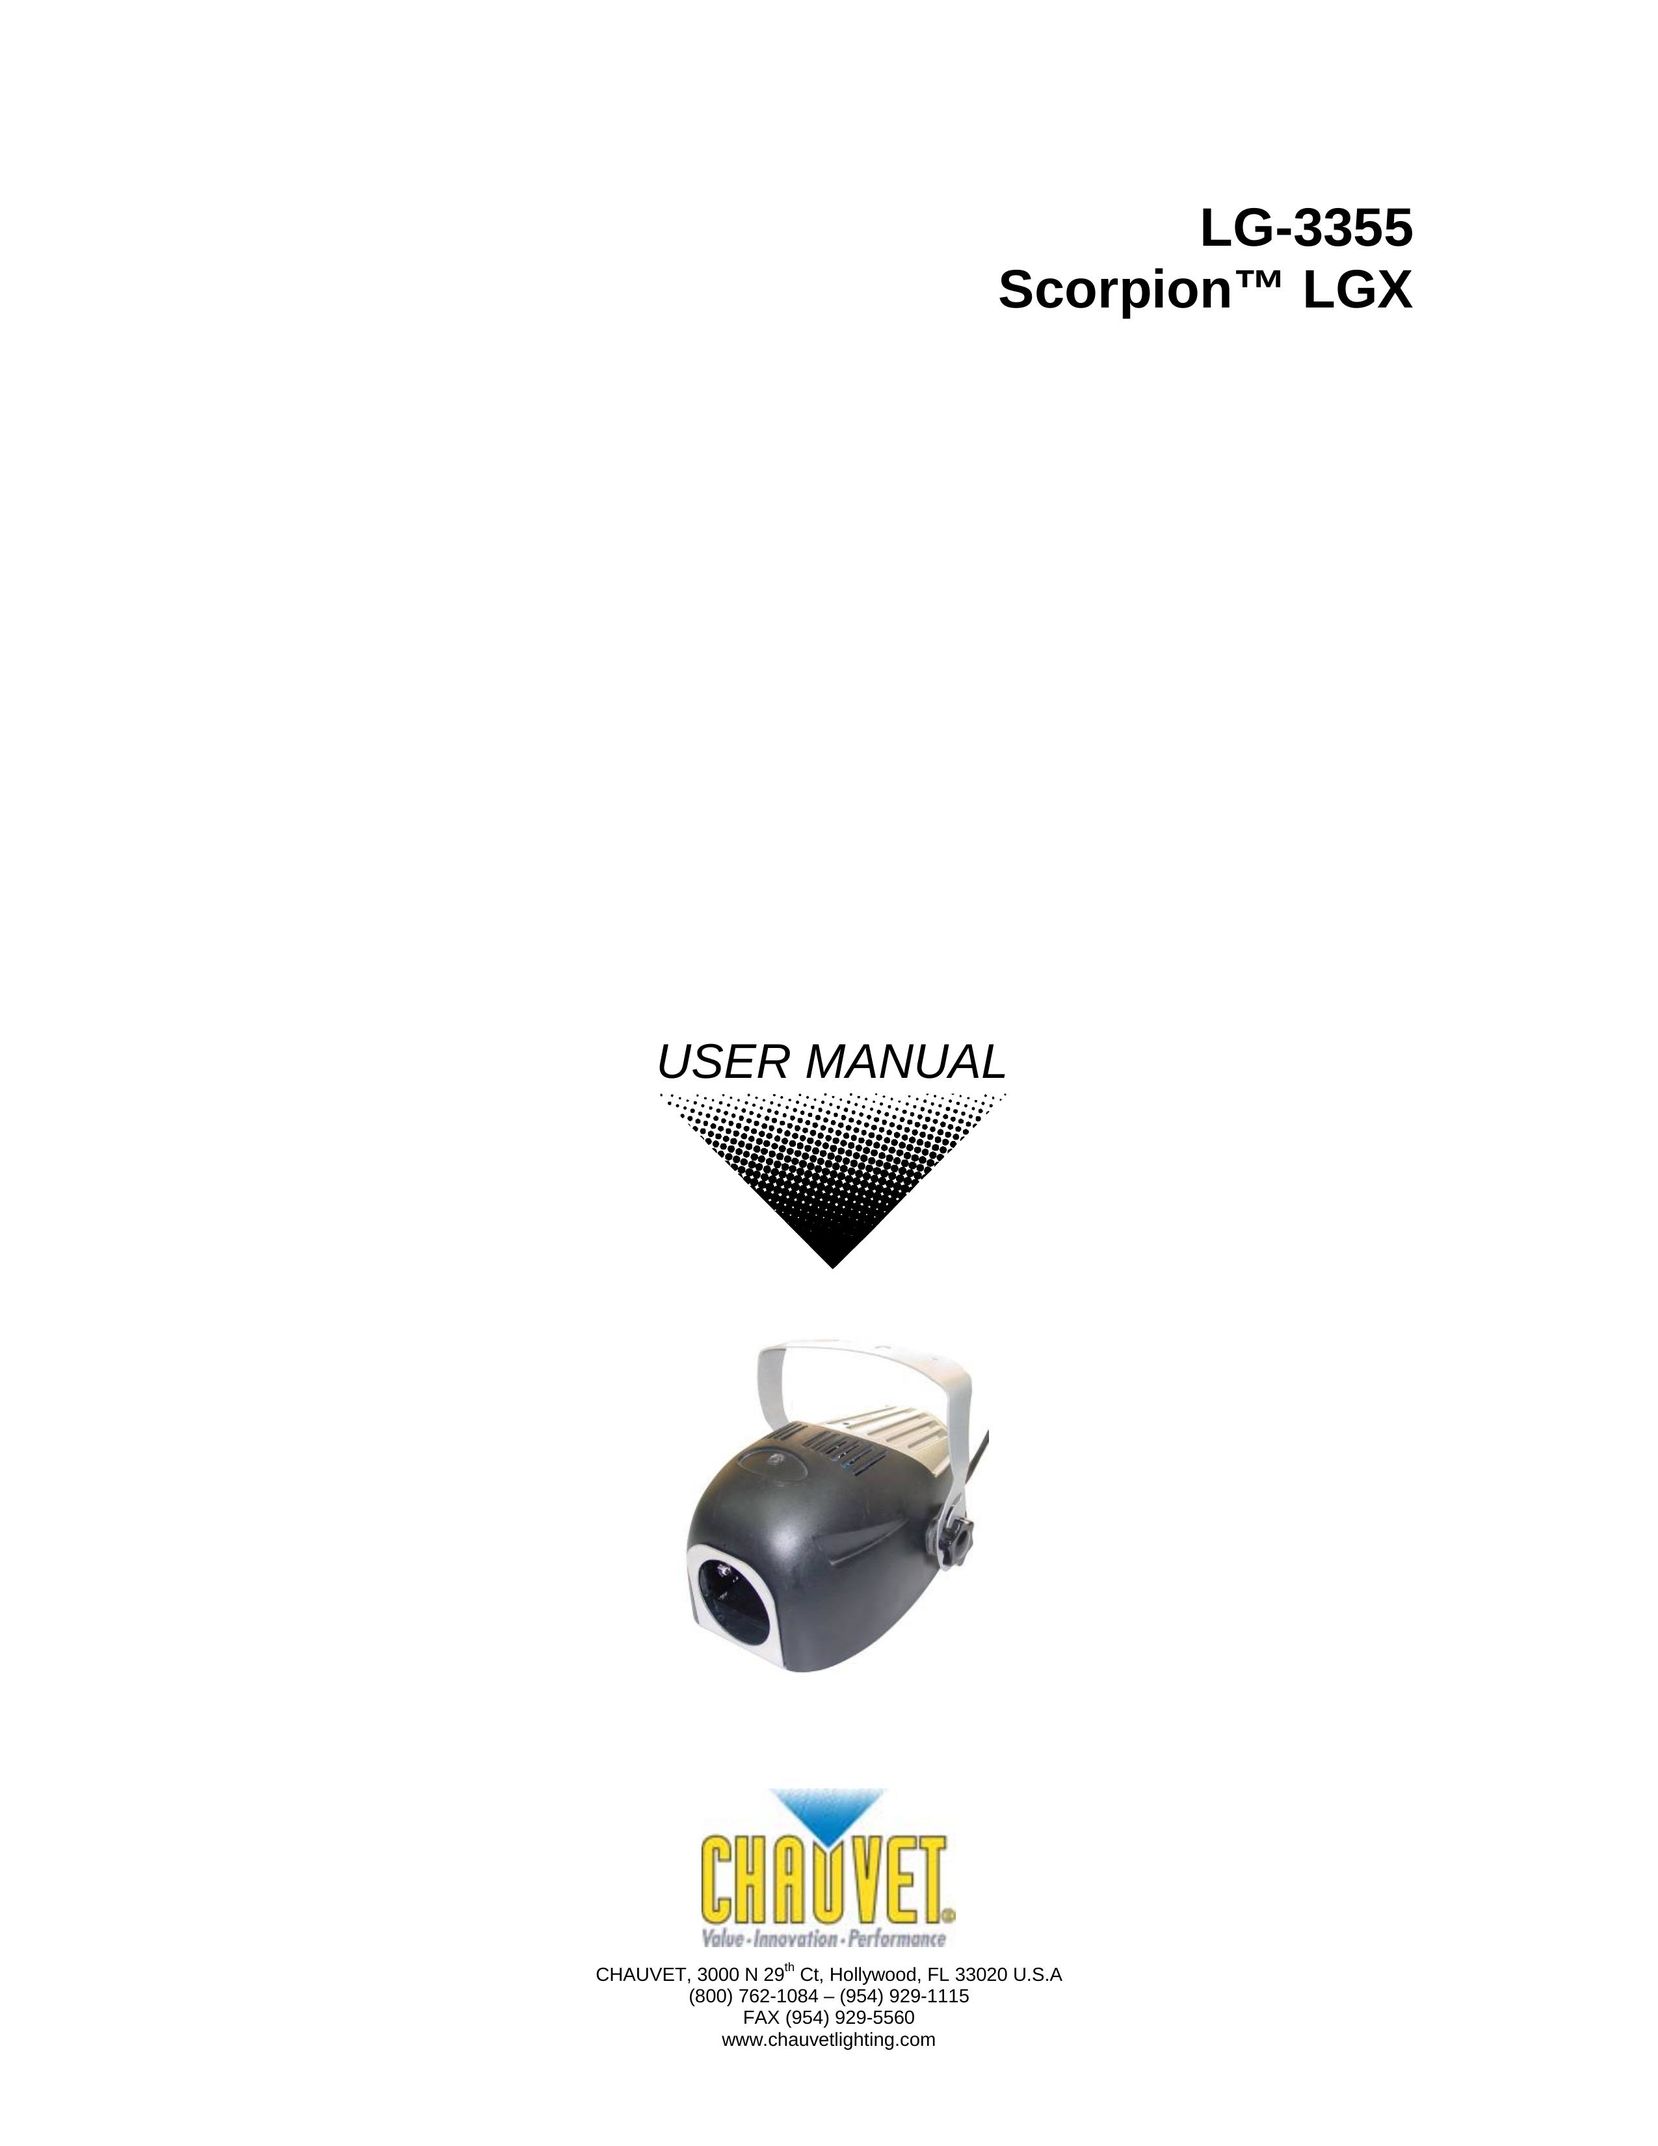 Chauvet LG-3355 Work Light User Manual